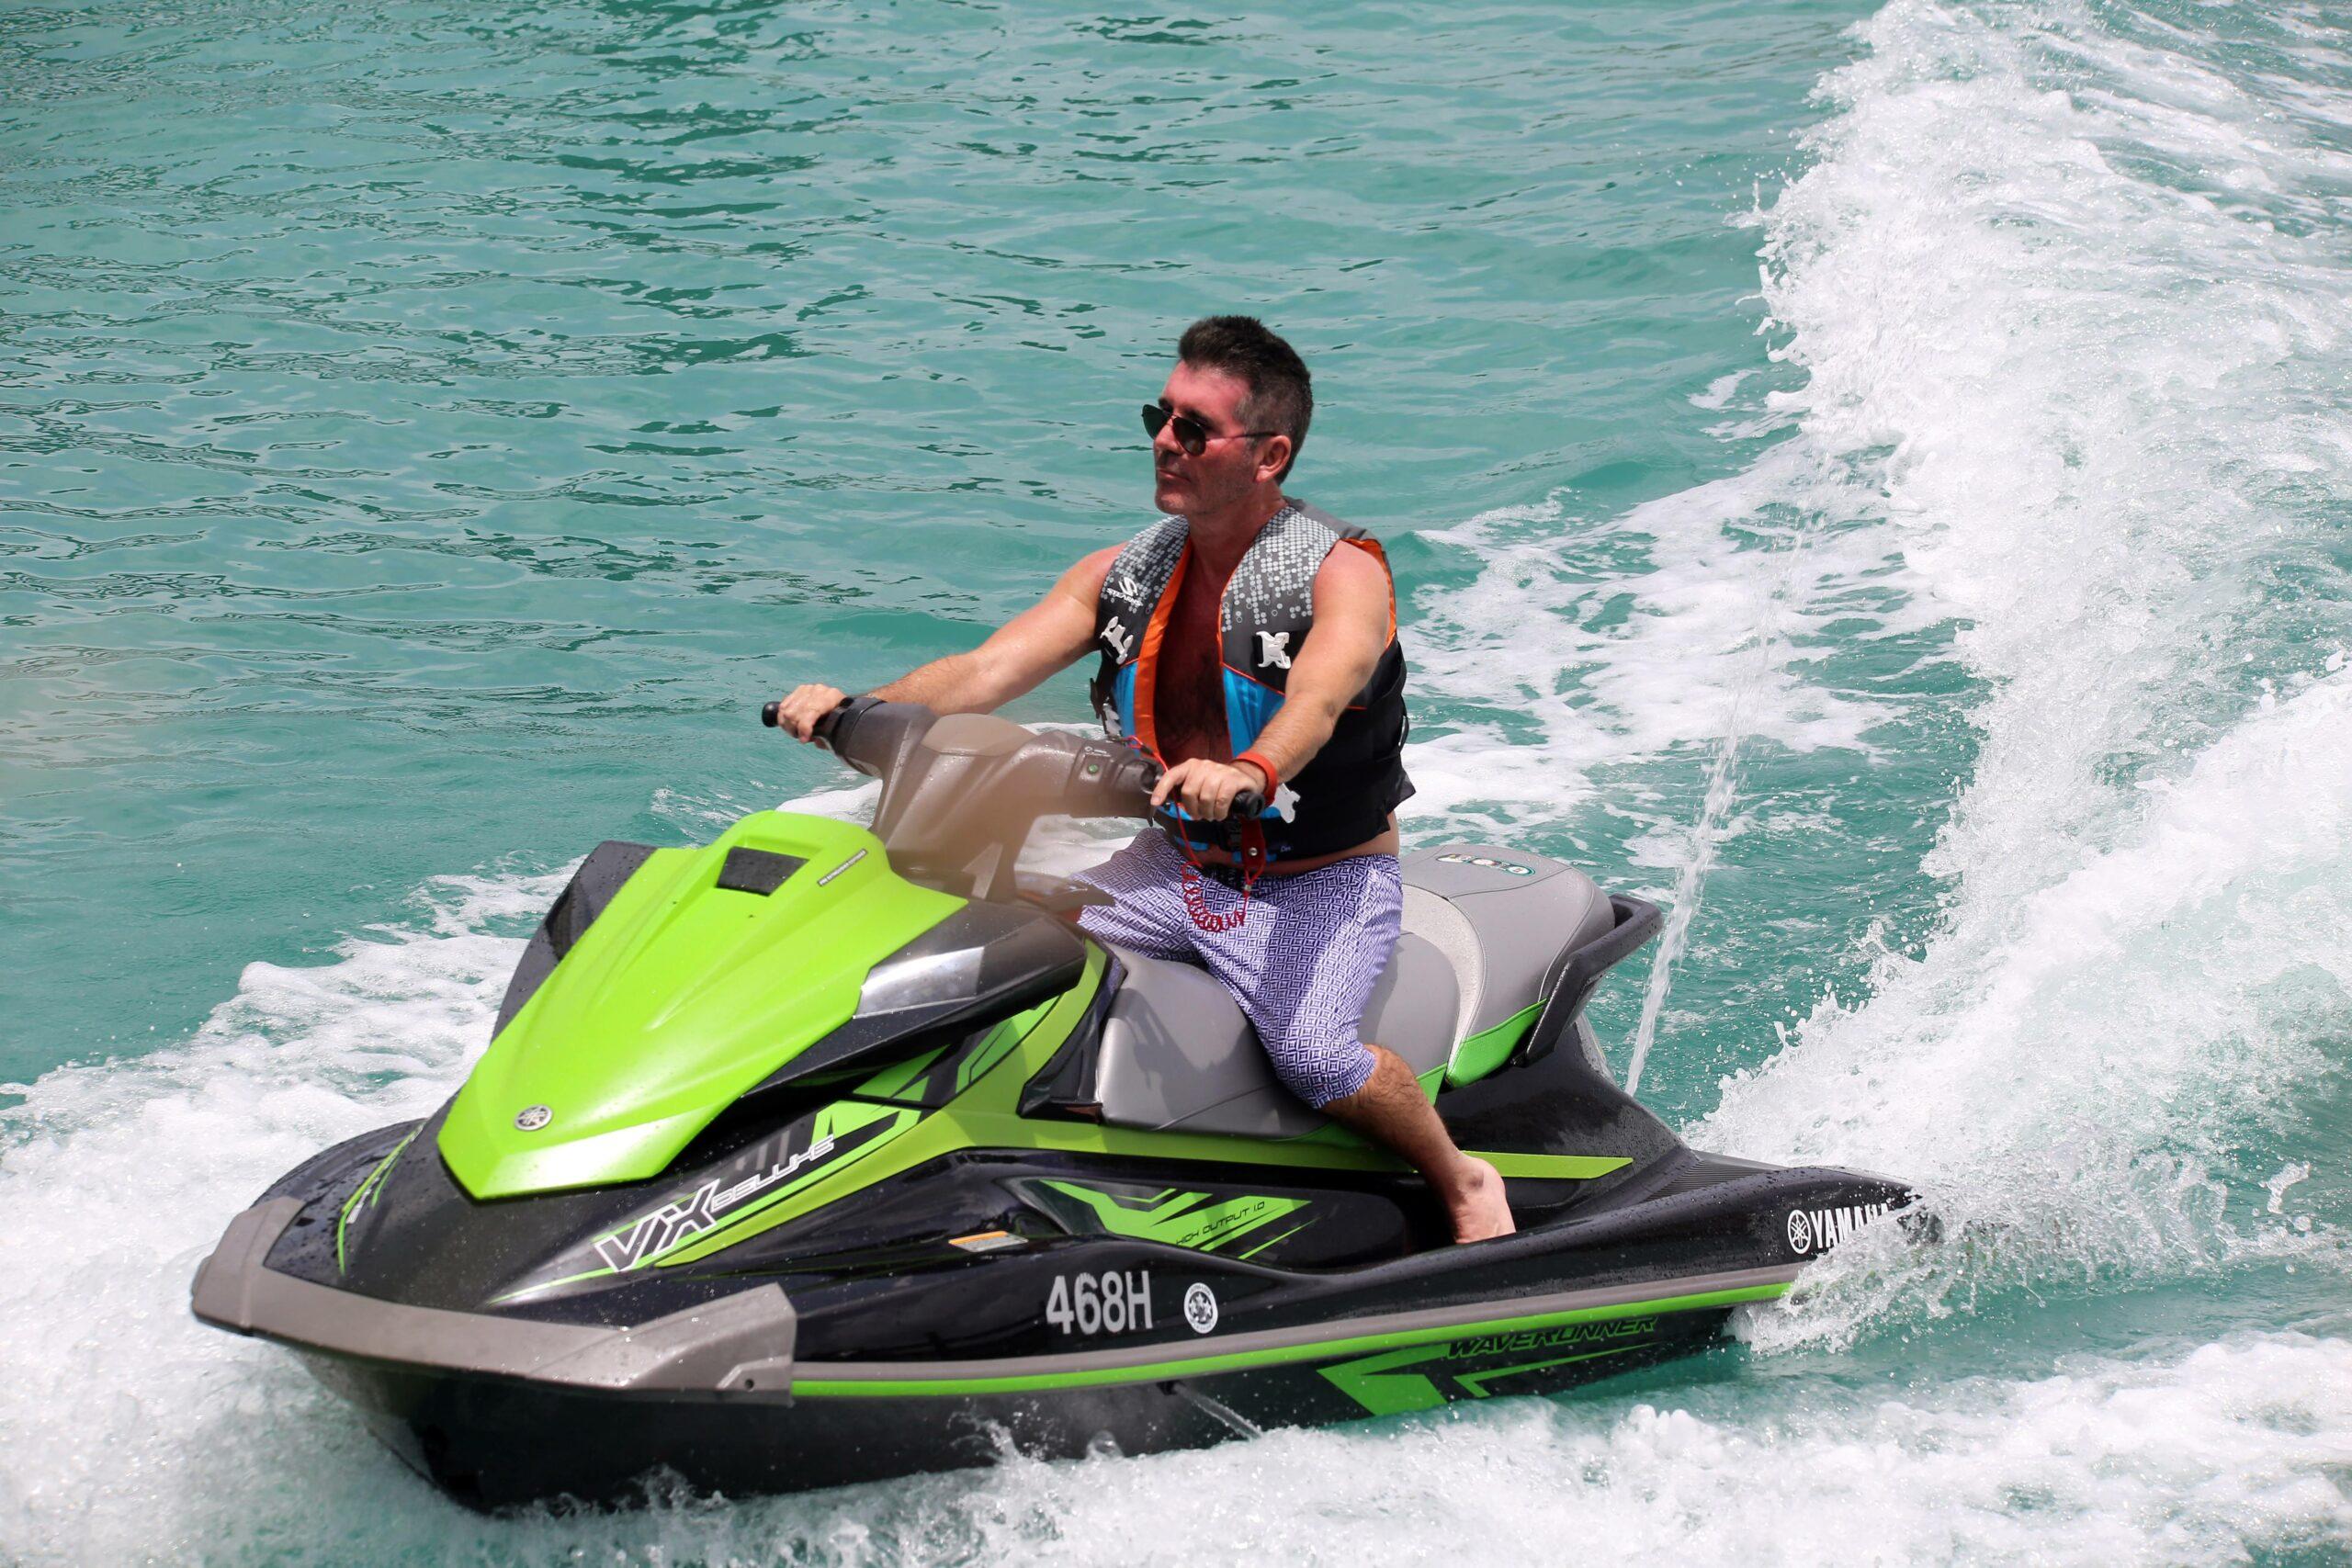 Simon Cowell takes a ride on a jet ski in Barbados